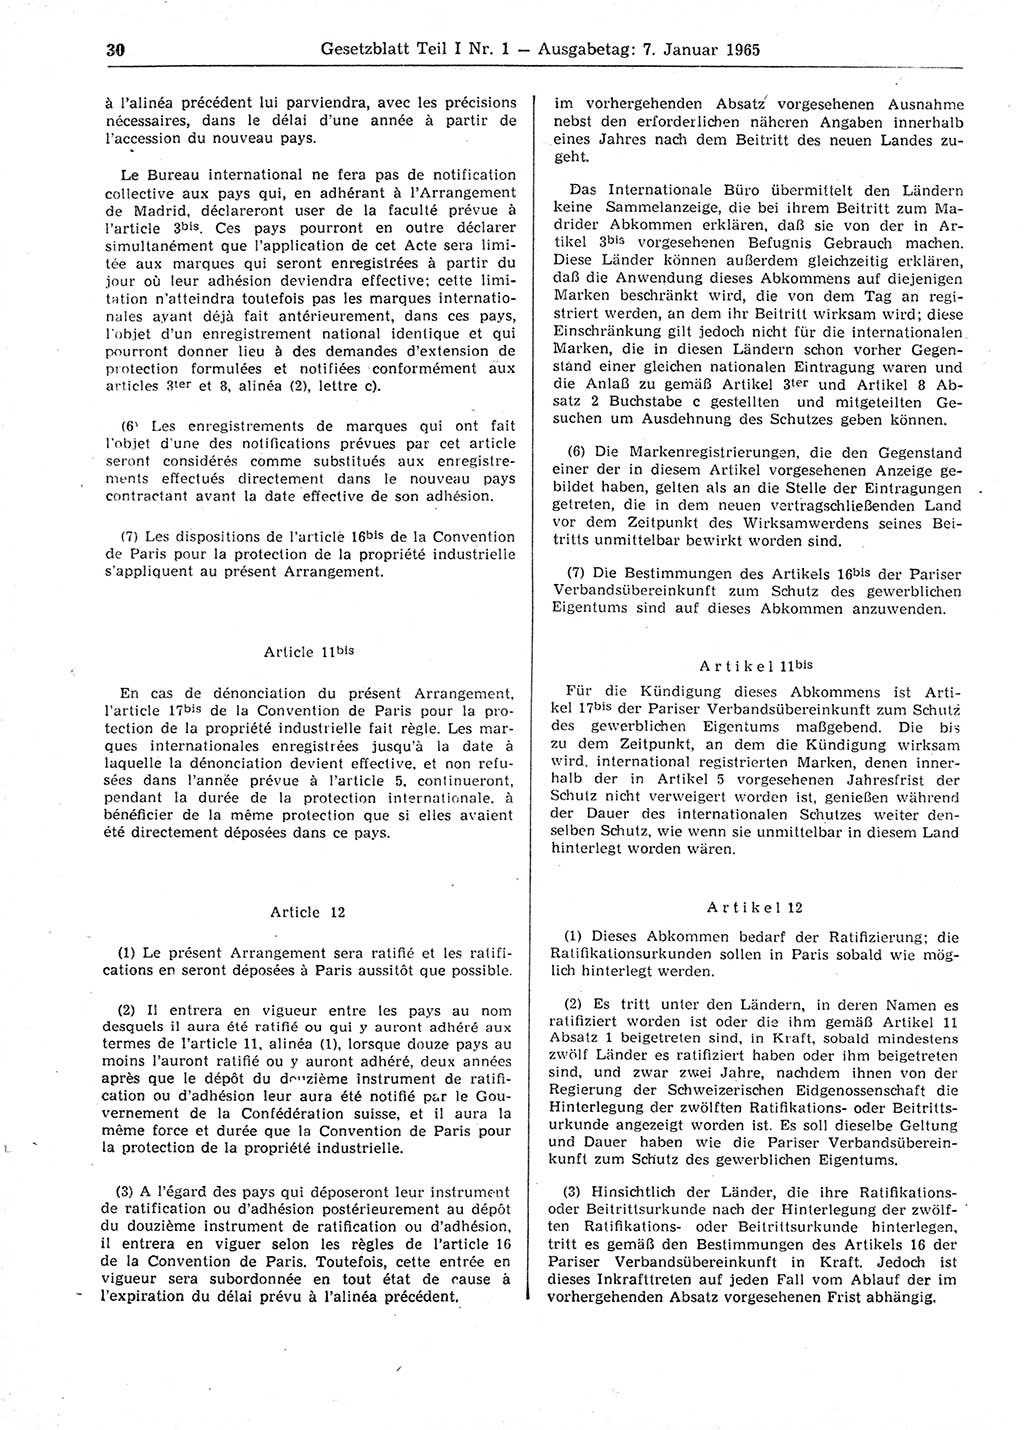 Gesetzblatt (GBl.) der Deutschen Demokratischen Republik (DDR) Teil Ⅰ 1965, Seite 30 (GBl. DDR Ⅰ 1965, S. 30)